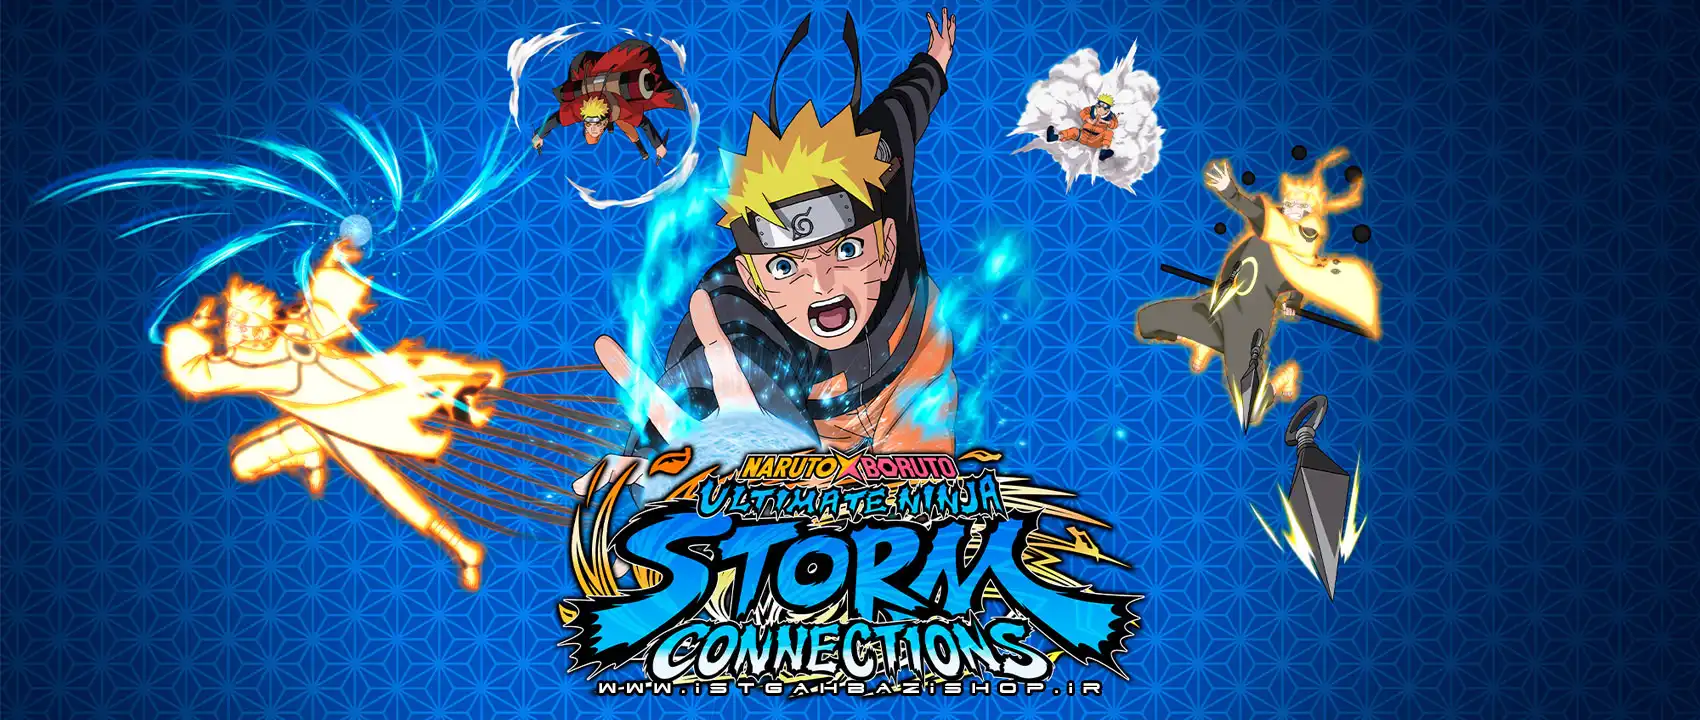 خرید بازی Naruto x Boruto Ultimate Ninja Storm connections فور